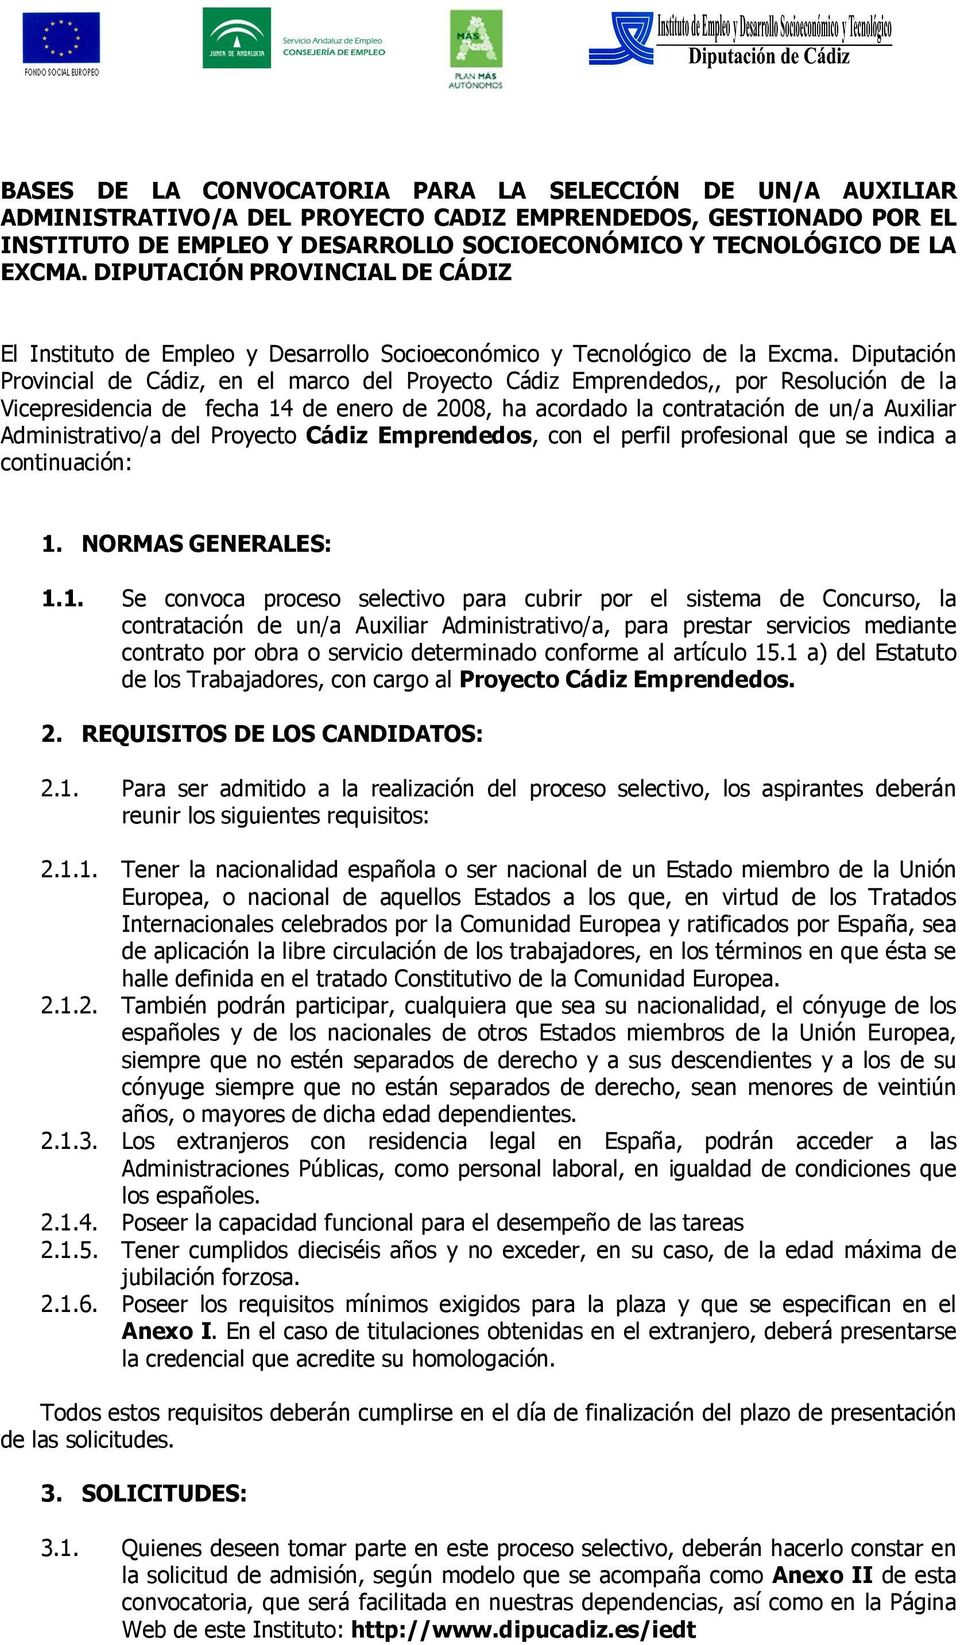 Diputación Provincial de Cádiz, en el marco del Proyecto Cádiz Emprendedos,, por Resolución de la Vicepresidencia de fecha 14 de enero de 2008, ha acordado la contratación de un/a Auxiliar